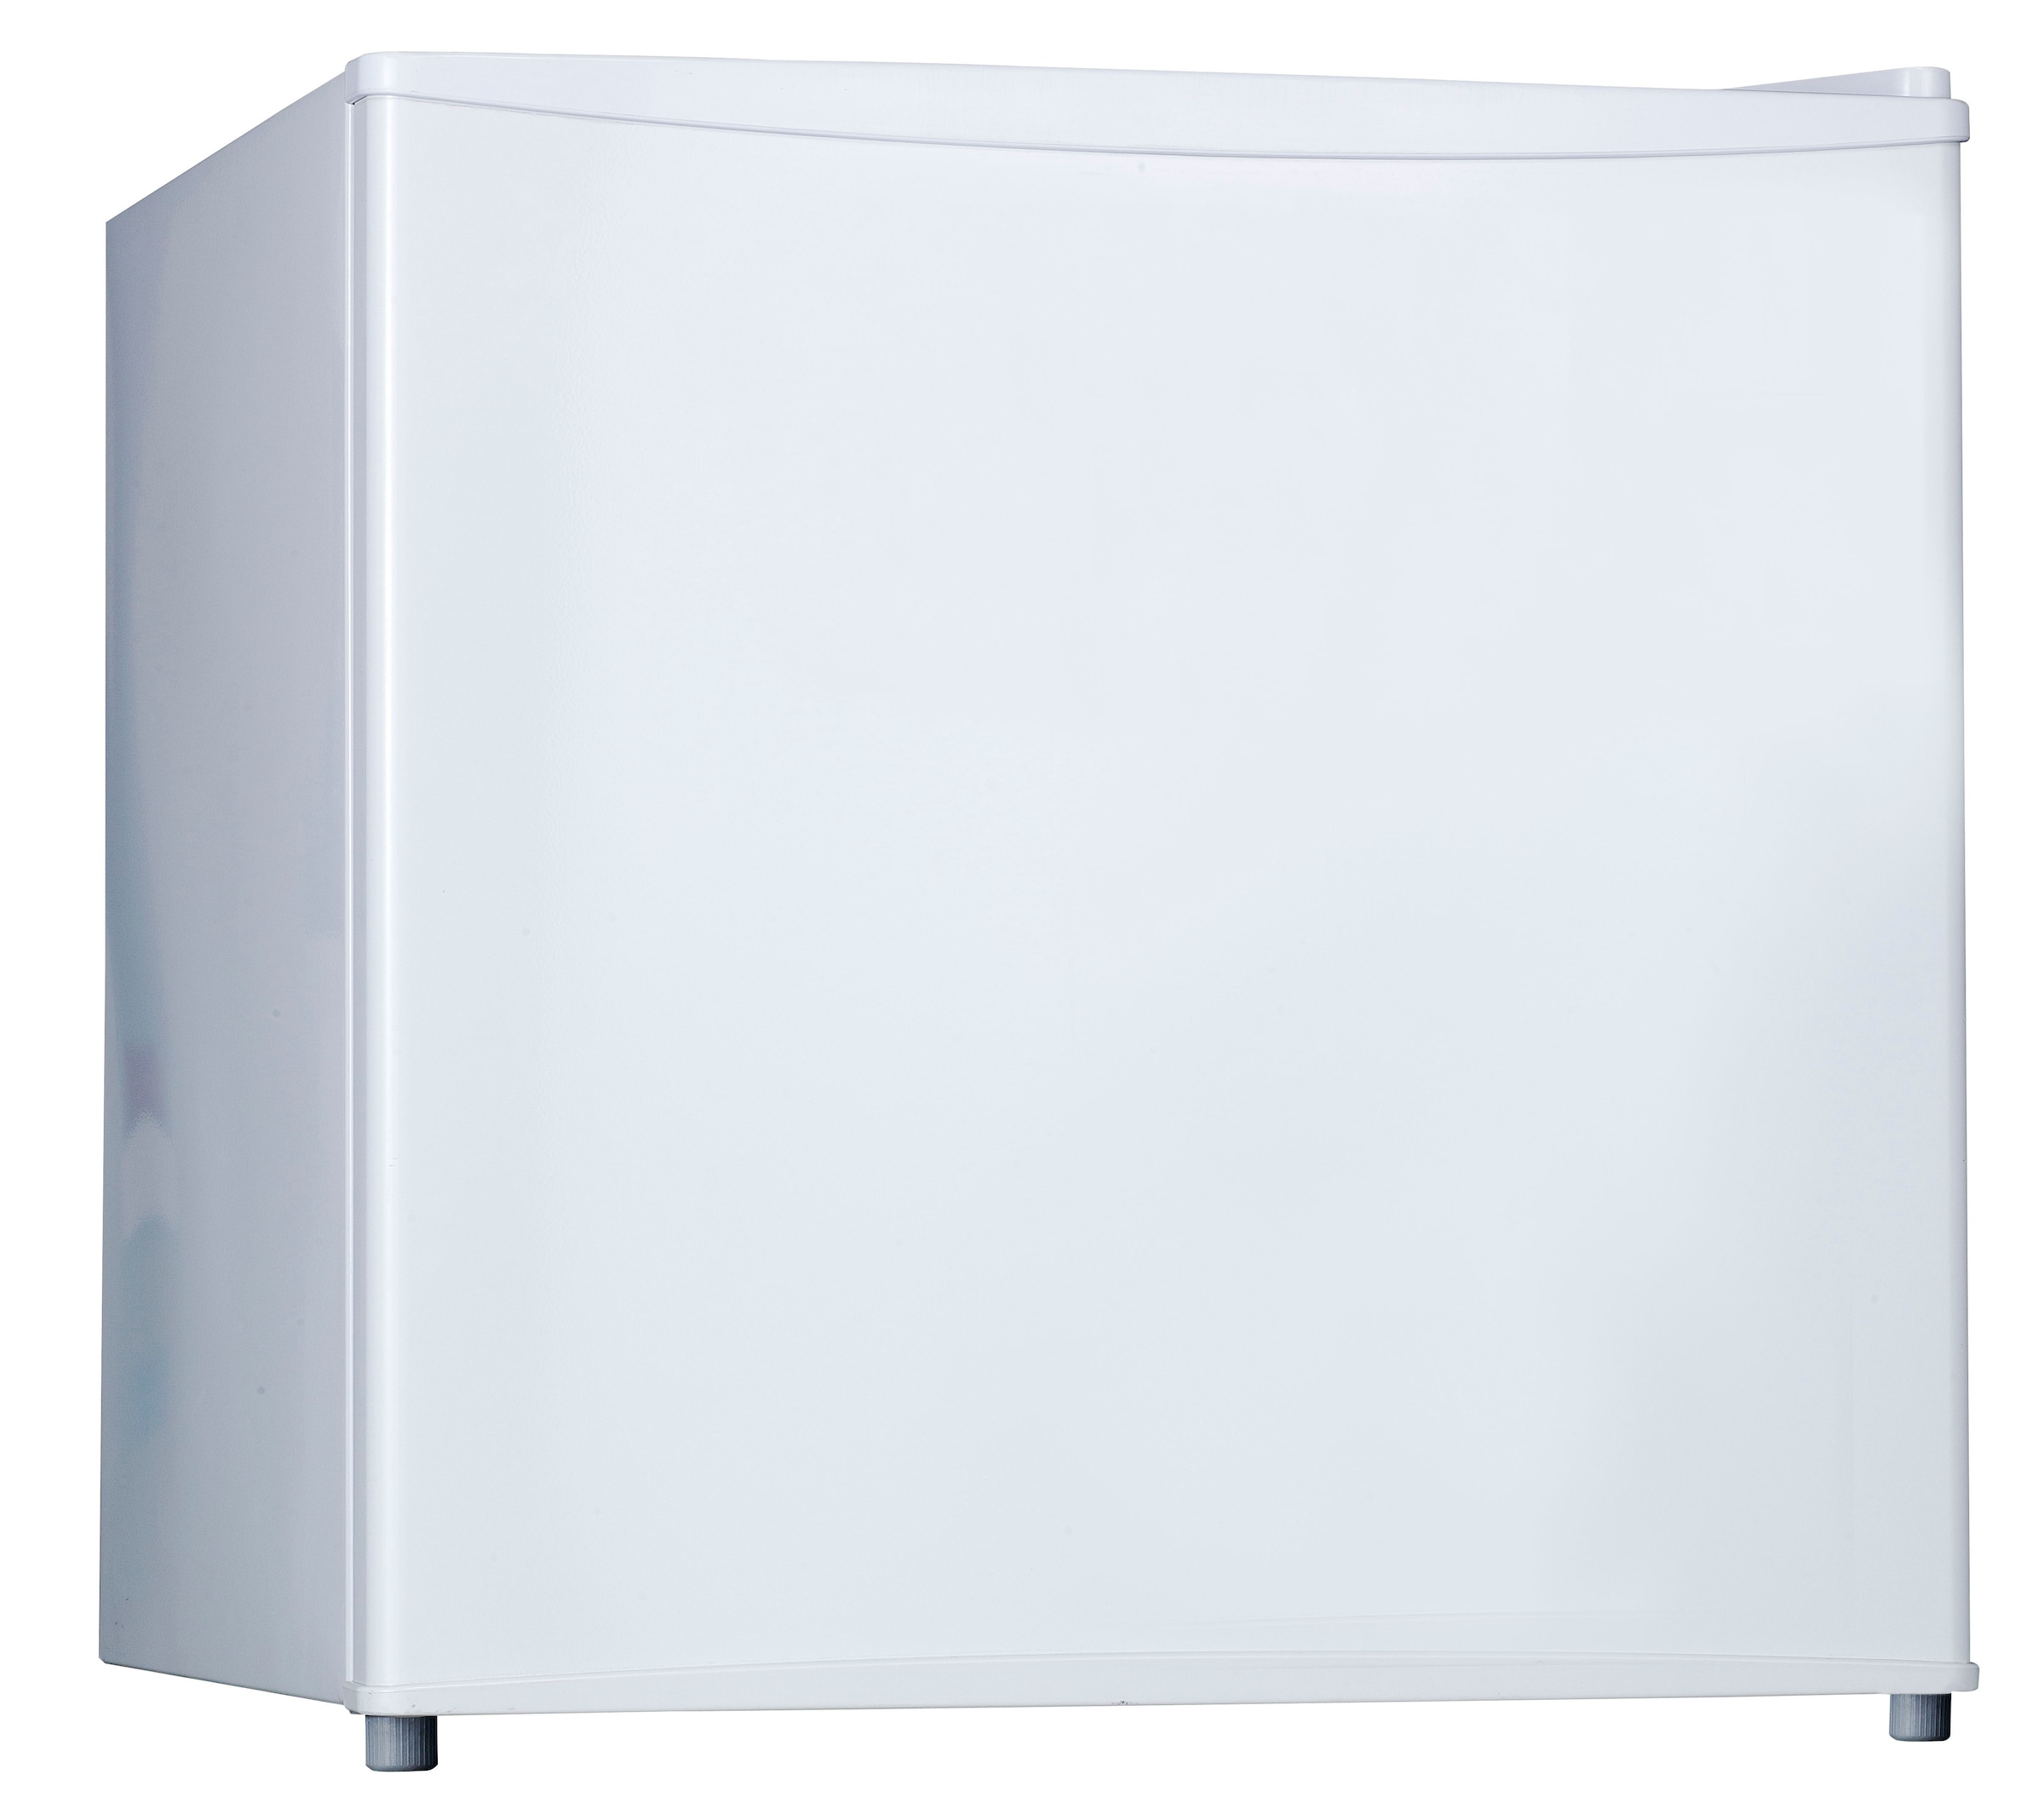 Kühlschrank, KB 1550+, 49,2 cm hoch, 47,2 cm breit